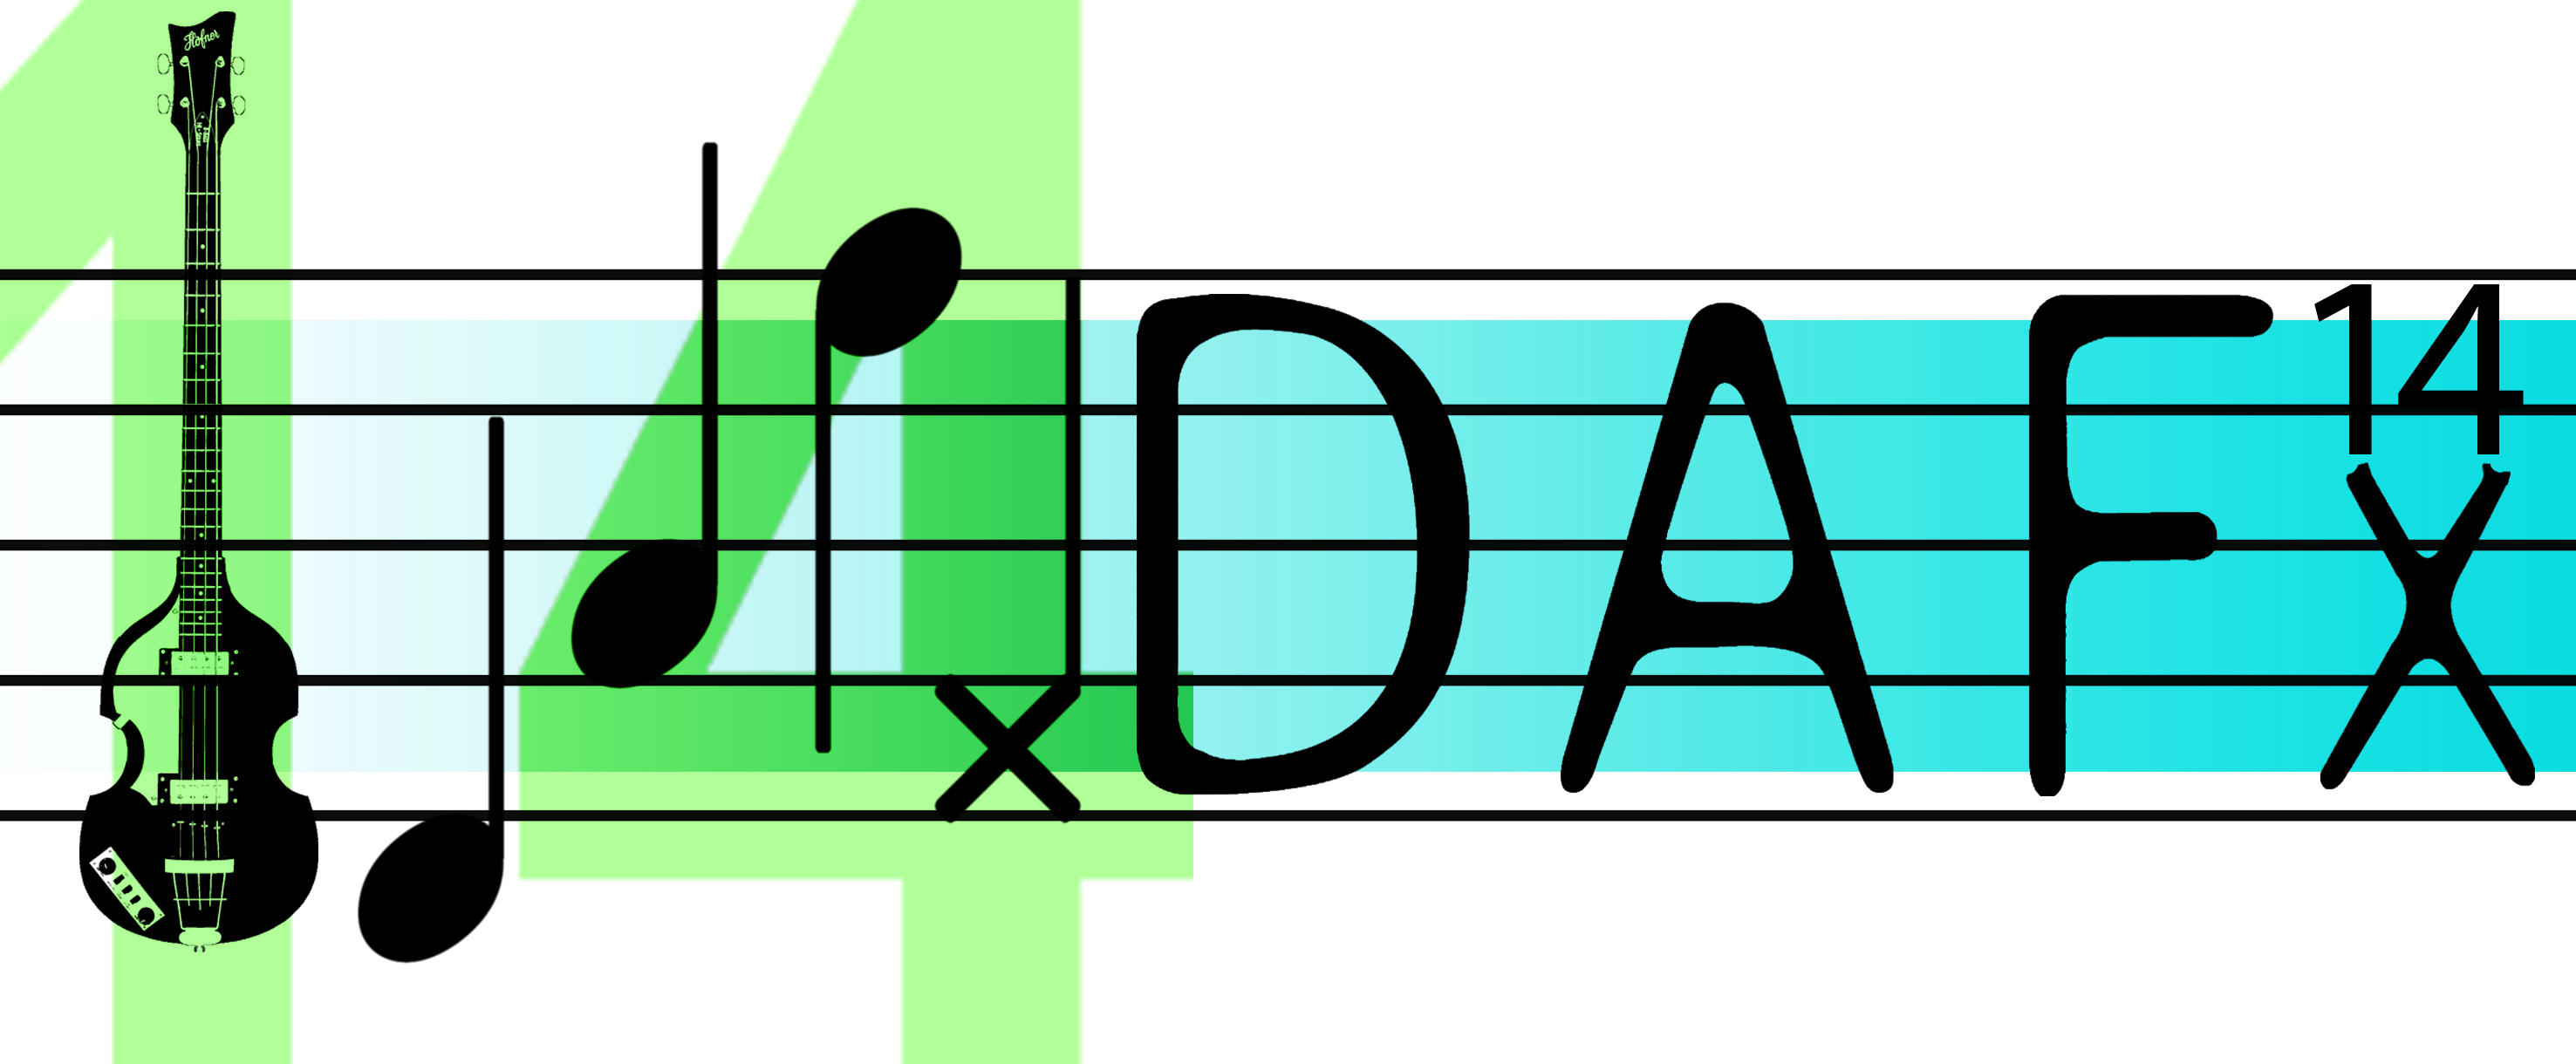 DAFx14 Logo